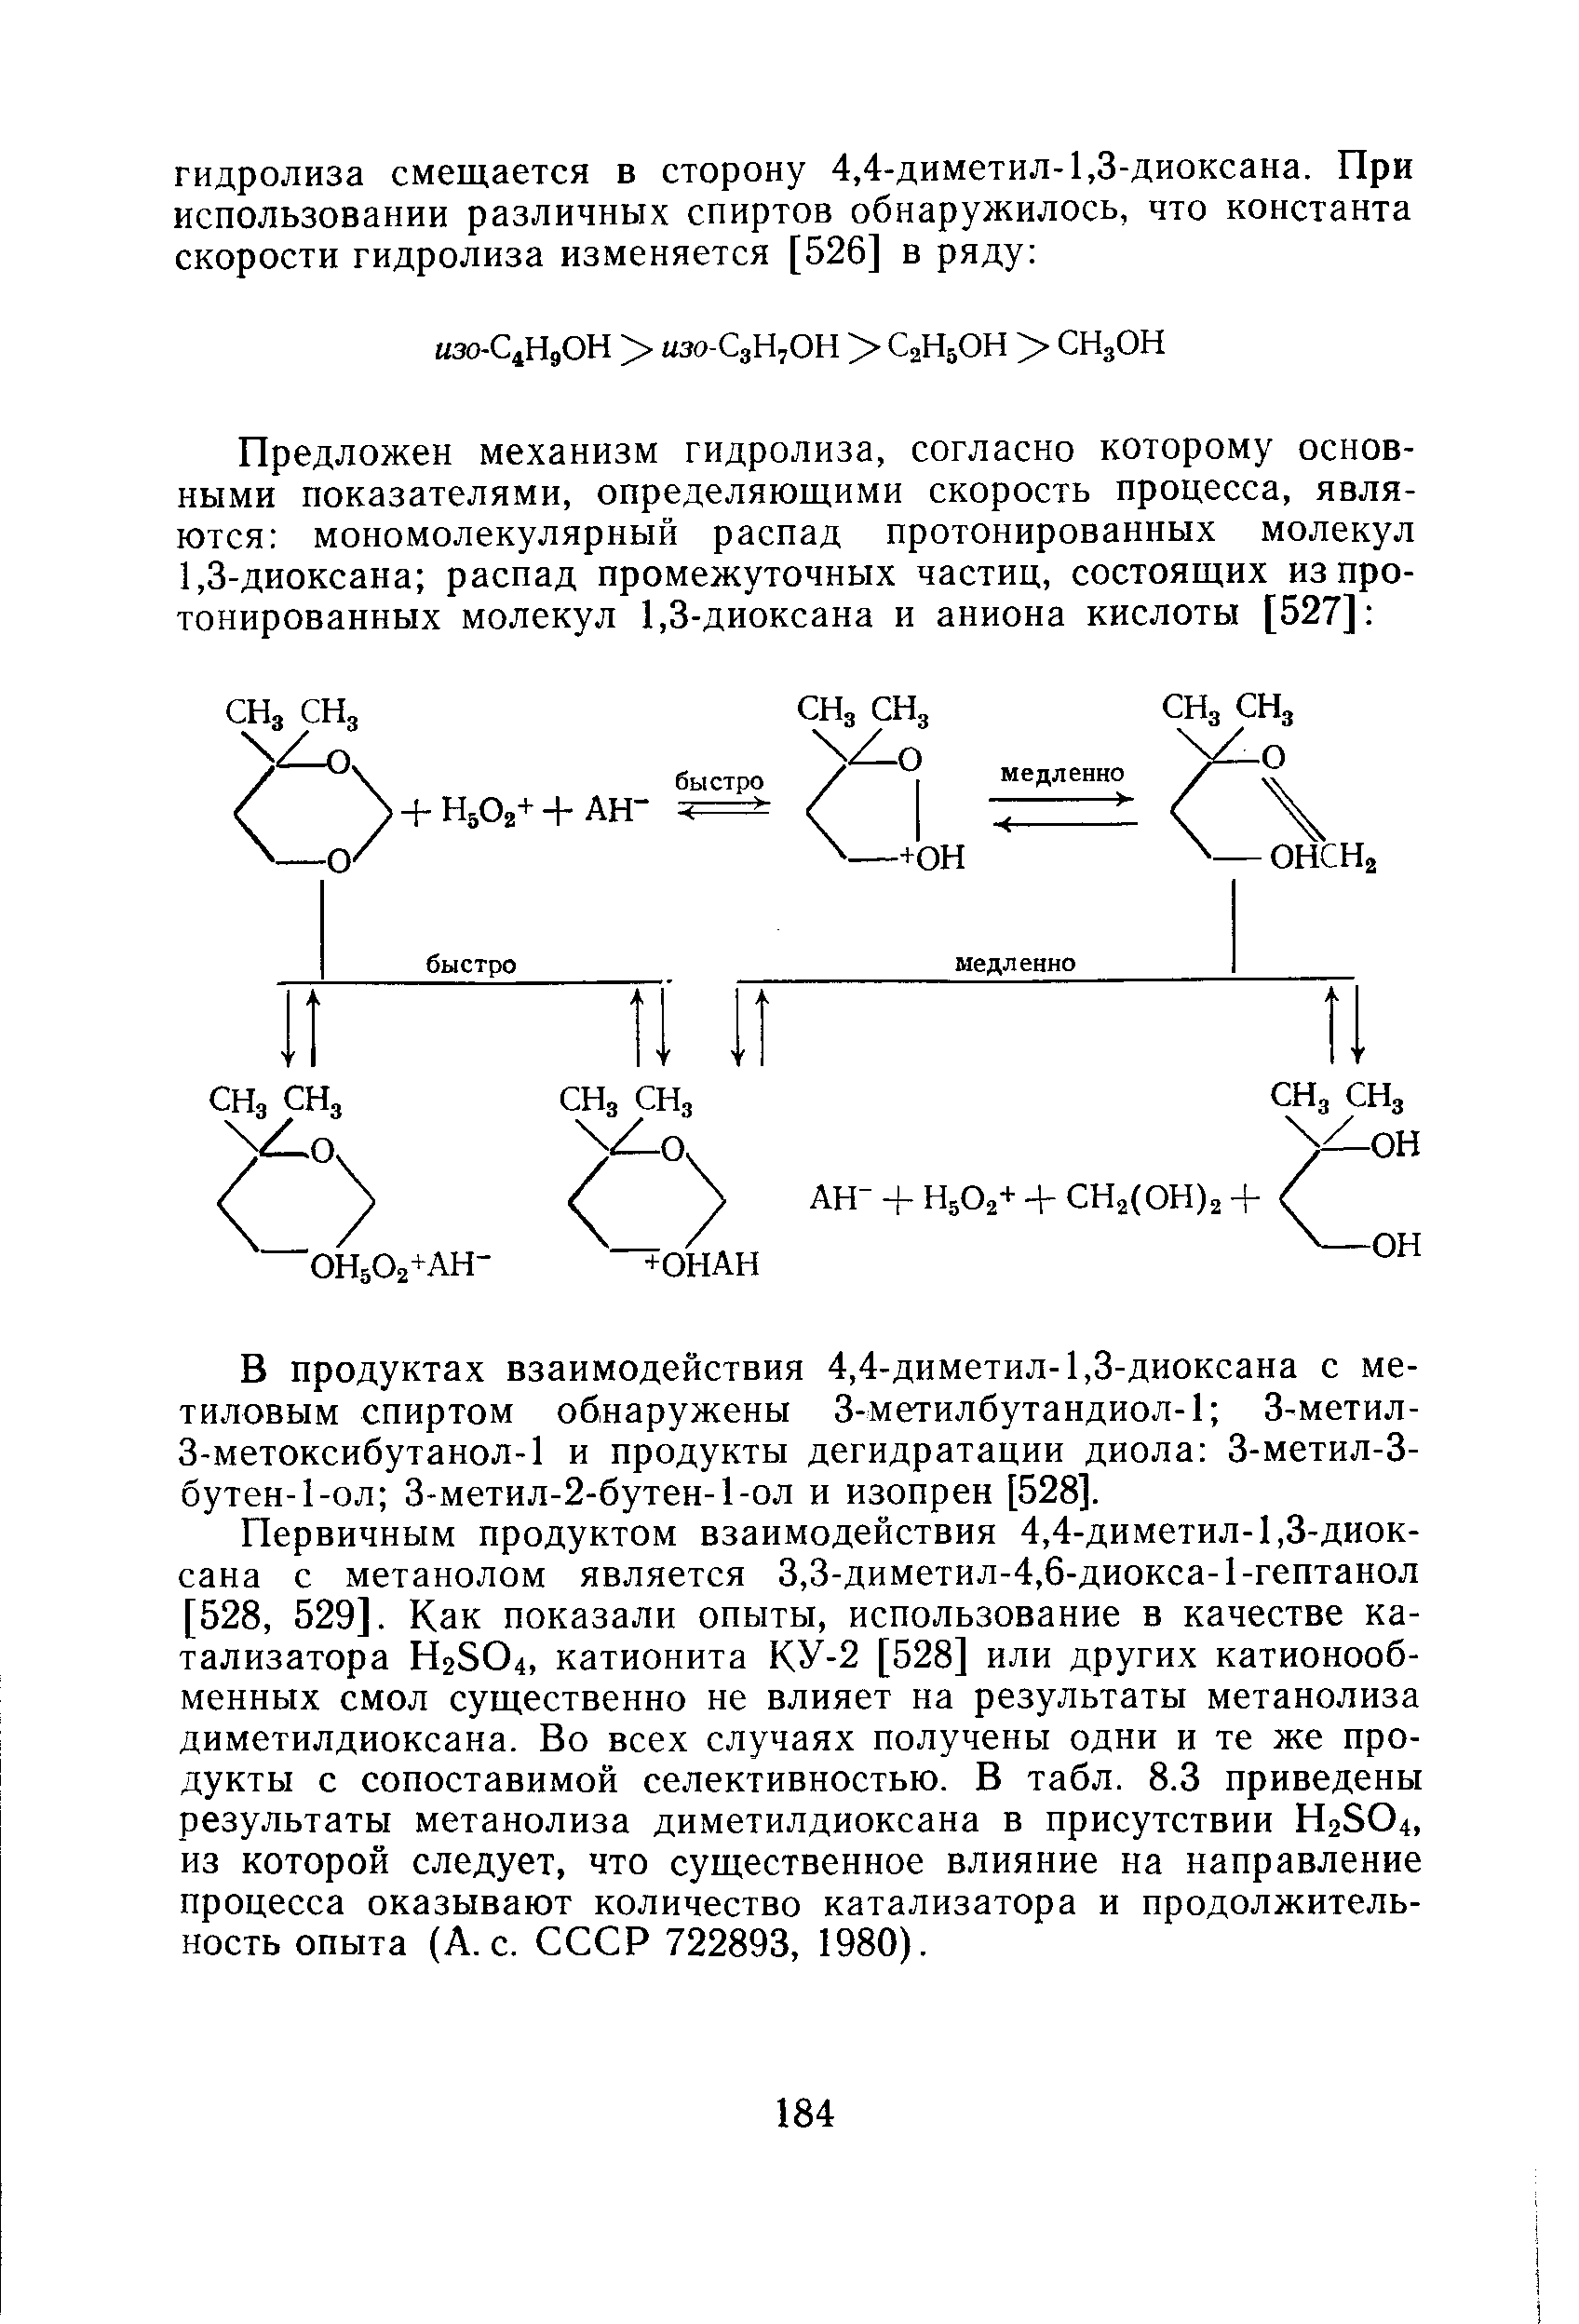 Первичным продуктом взаимодействия 4,4-диметил-1,3-диоксана с метанолом является 3,3-диметил-4,6-диокса-1-гептанол [528, 529]. Как показали опыты, использование в качестве катализатора H2SO4, катионита КУ-2 [528] или других катионообменных смол существенно не влияет на результаты метанолиза диметилдиоксана. Во всех случаях получены одни и те же продукты с сопоставимой селективностью. В табл. 8.3 приведены результаты метанолиза диметилдиоксана в присутствии H2SO4, из которой следует, что существенное влияние на направление процесса оказывают количество катализатора и продолжительность опыта (A. . СССР 722893, 1980).